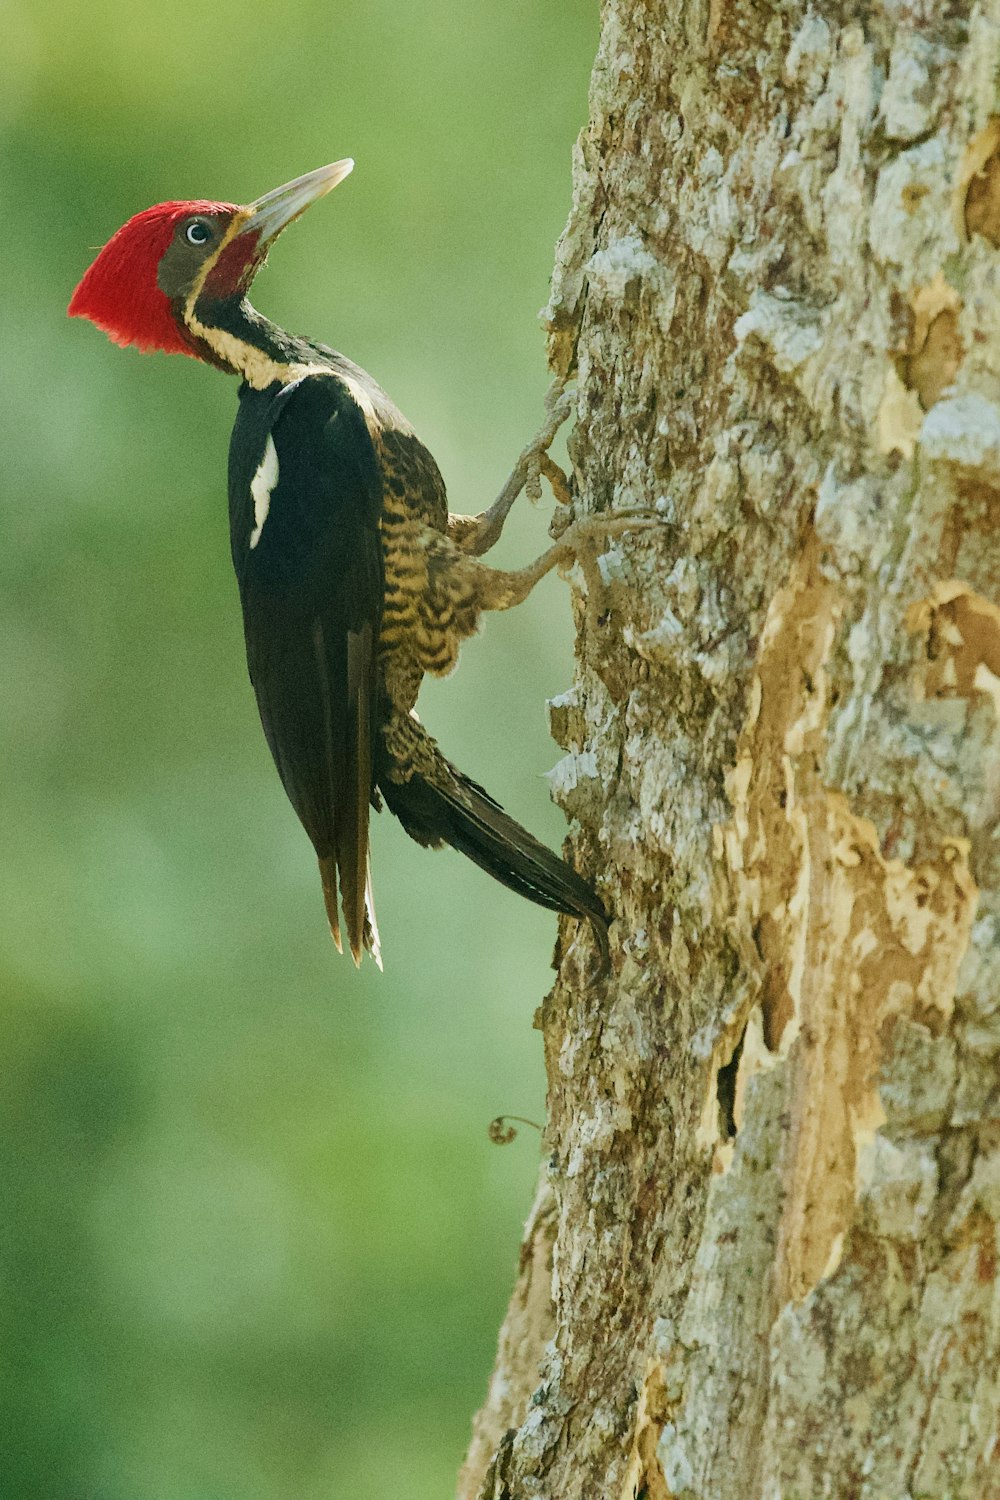 Un pájaro carpintero trepando por el tronco de un árbol